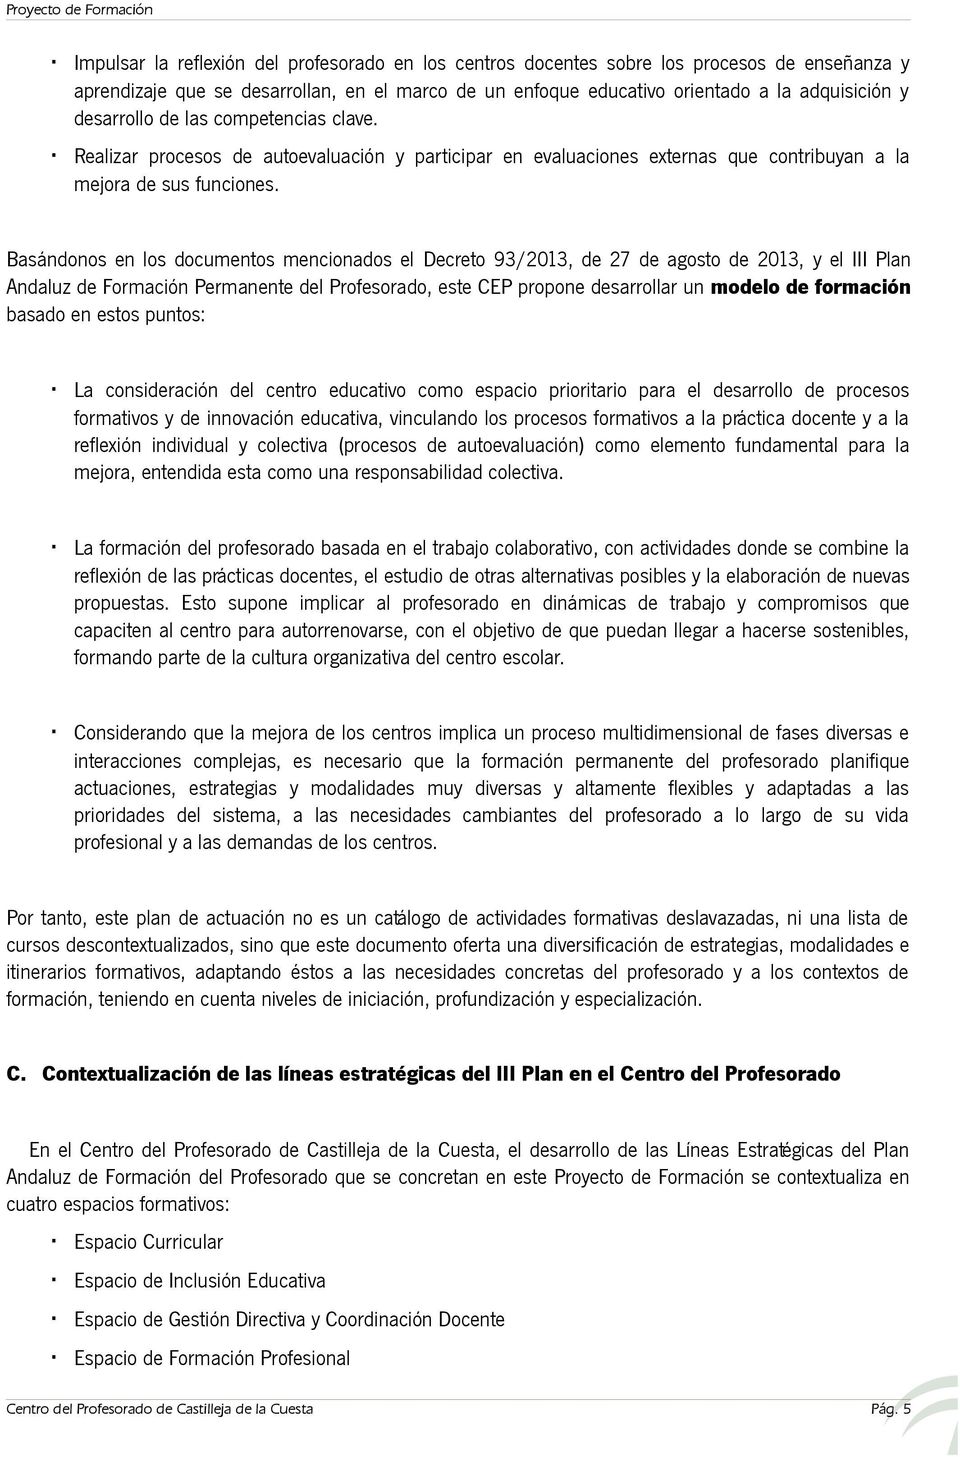 Basándonos en los documentos mencionados el Decreto 93/2013, de 27 de agosto de 2013, y el III Plan Andaluz de Formación Permanente del Profesorado, este CEP propone desarrollar un modelo de